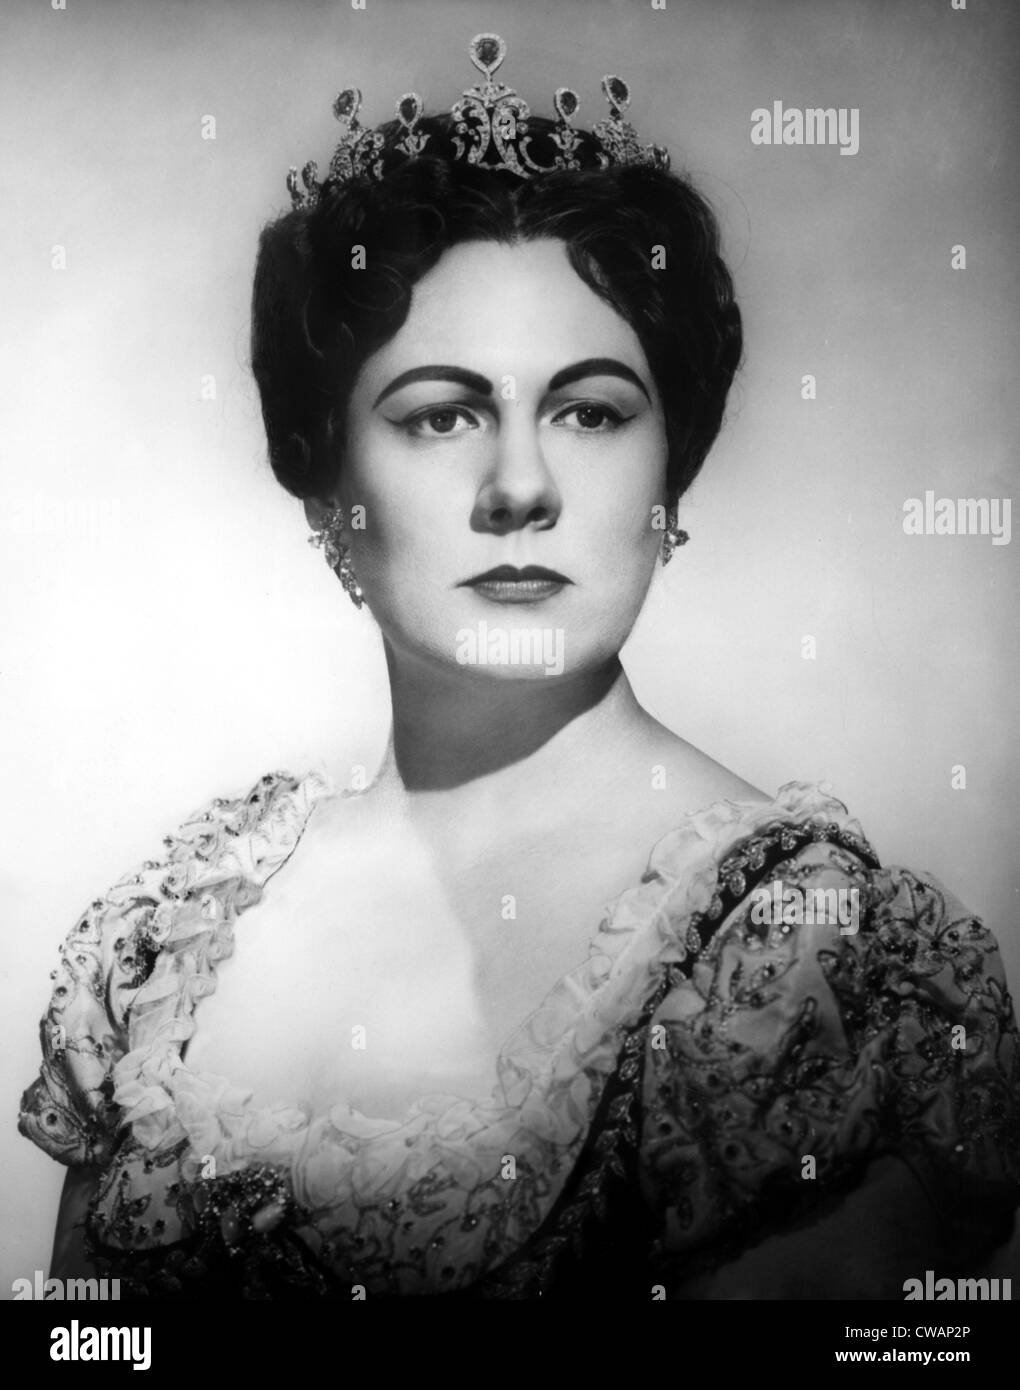 Renata Tebaldi dans le rôle-titre de Tosca de Puccini, vers 1960. Avec la permission de la CSU : Archives / Everett Collection Banque D'Images